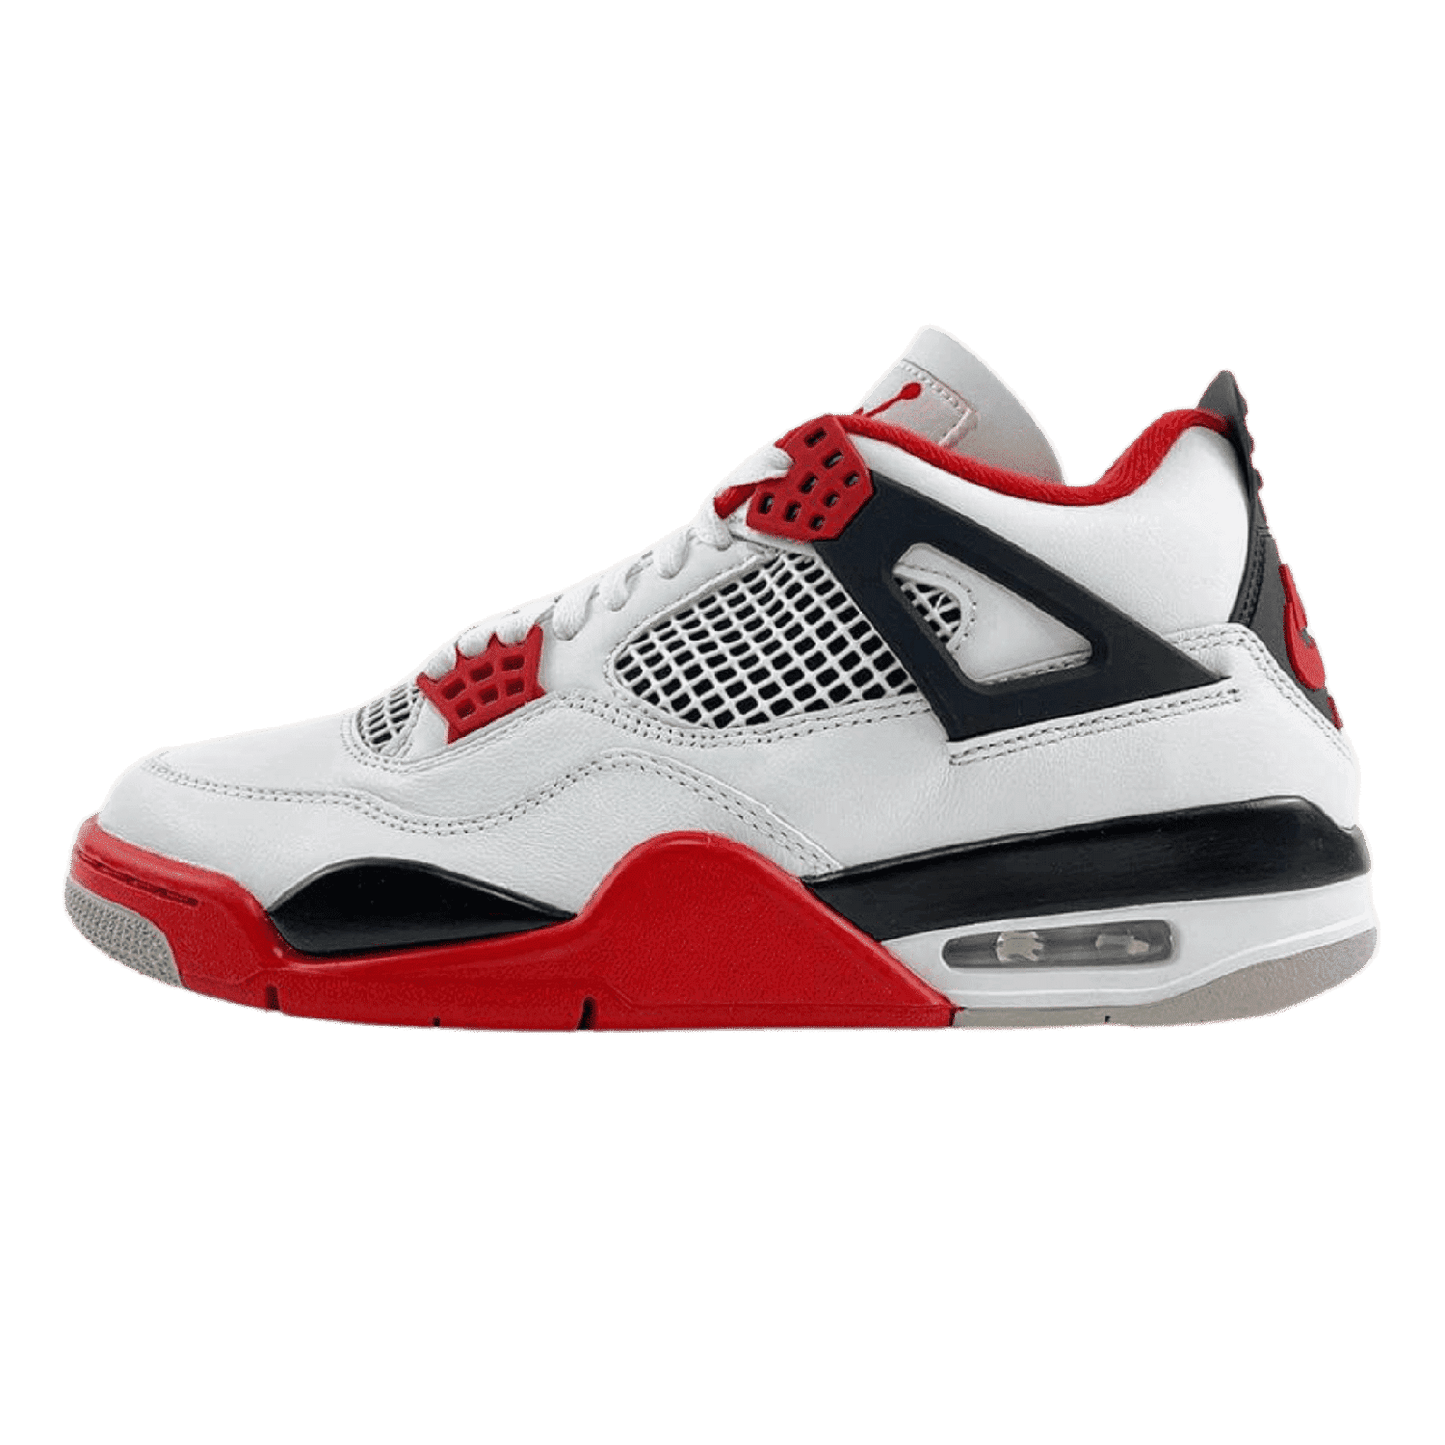 Air Jordan 4 Fire Red - Sneakerterritory; Sneaker Territory